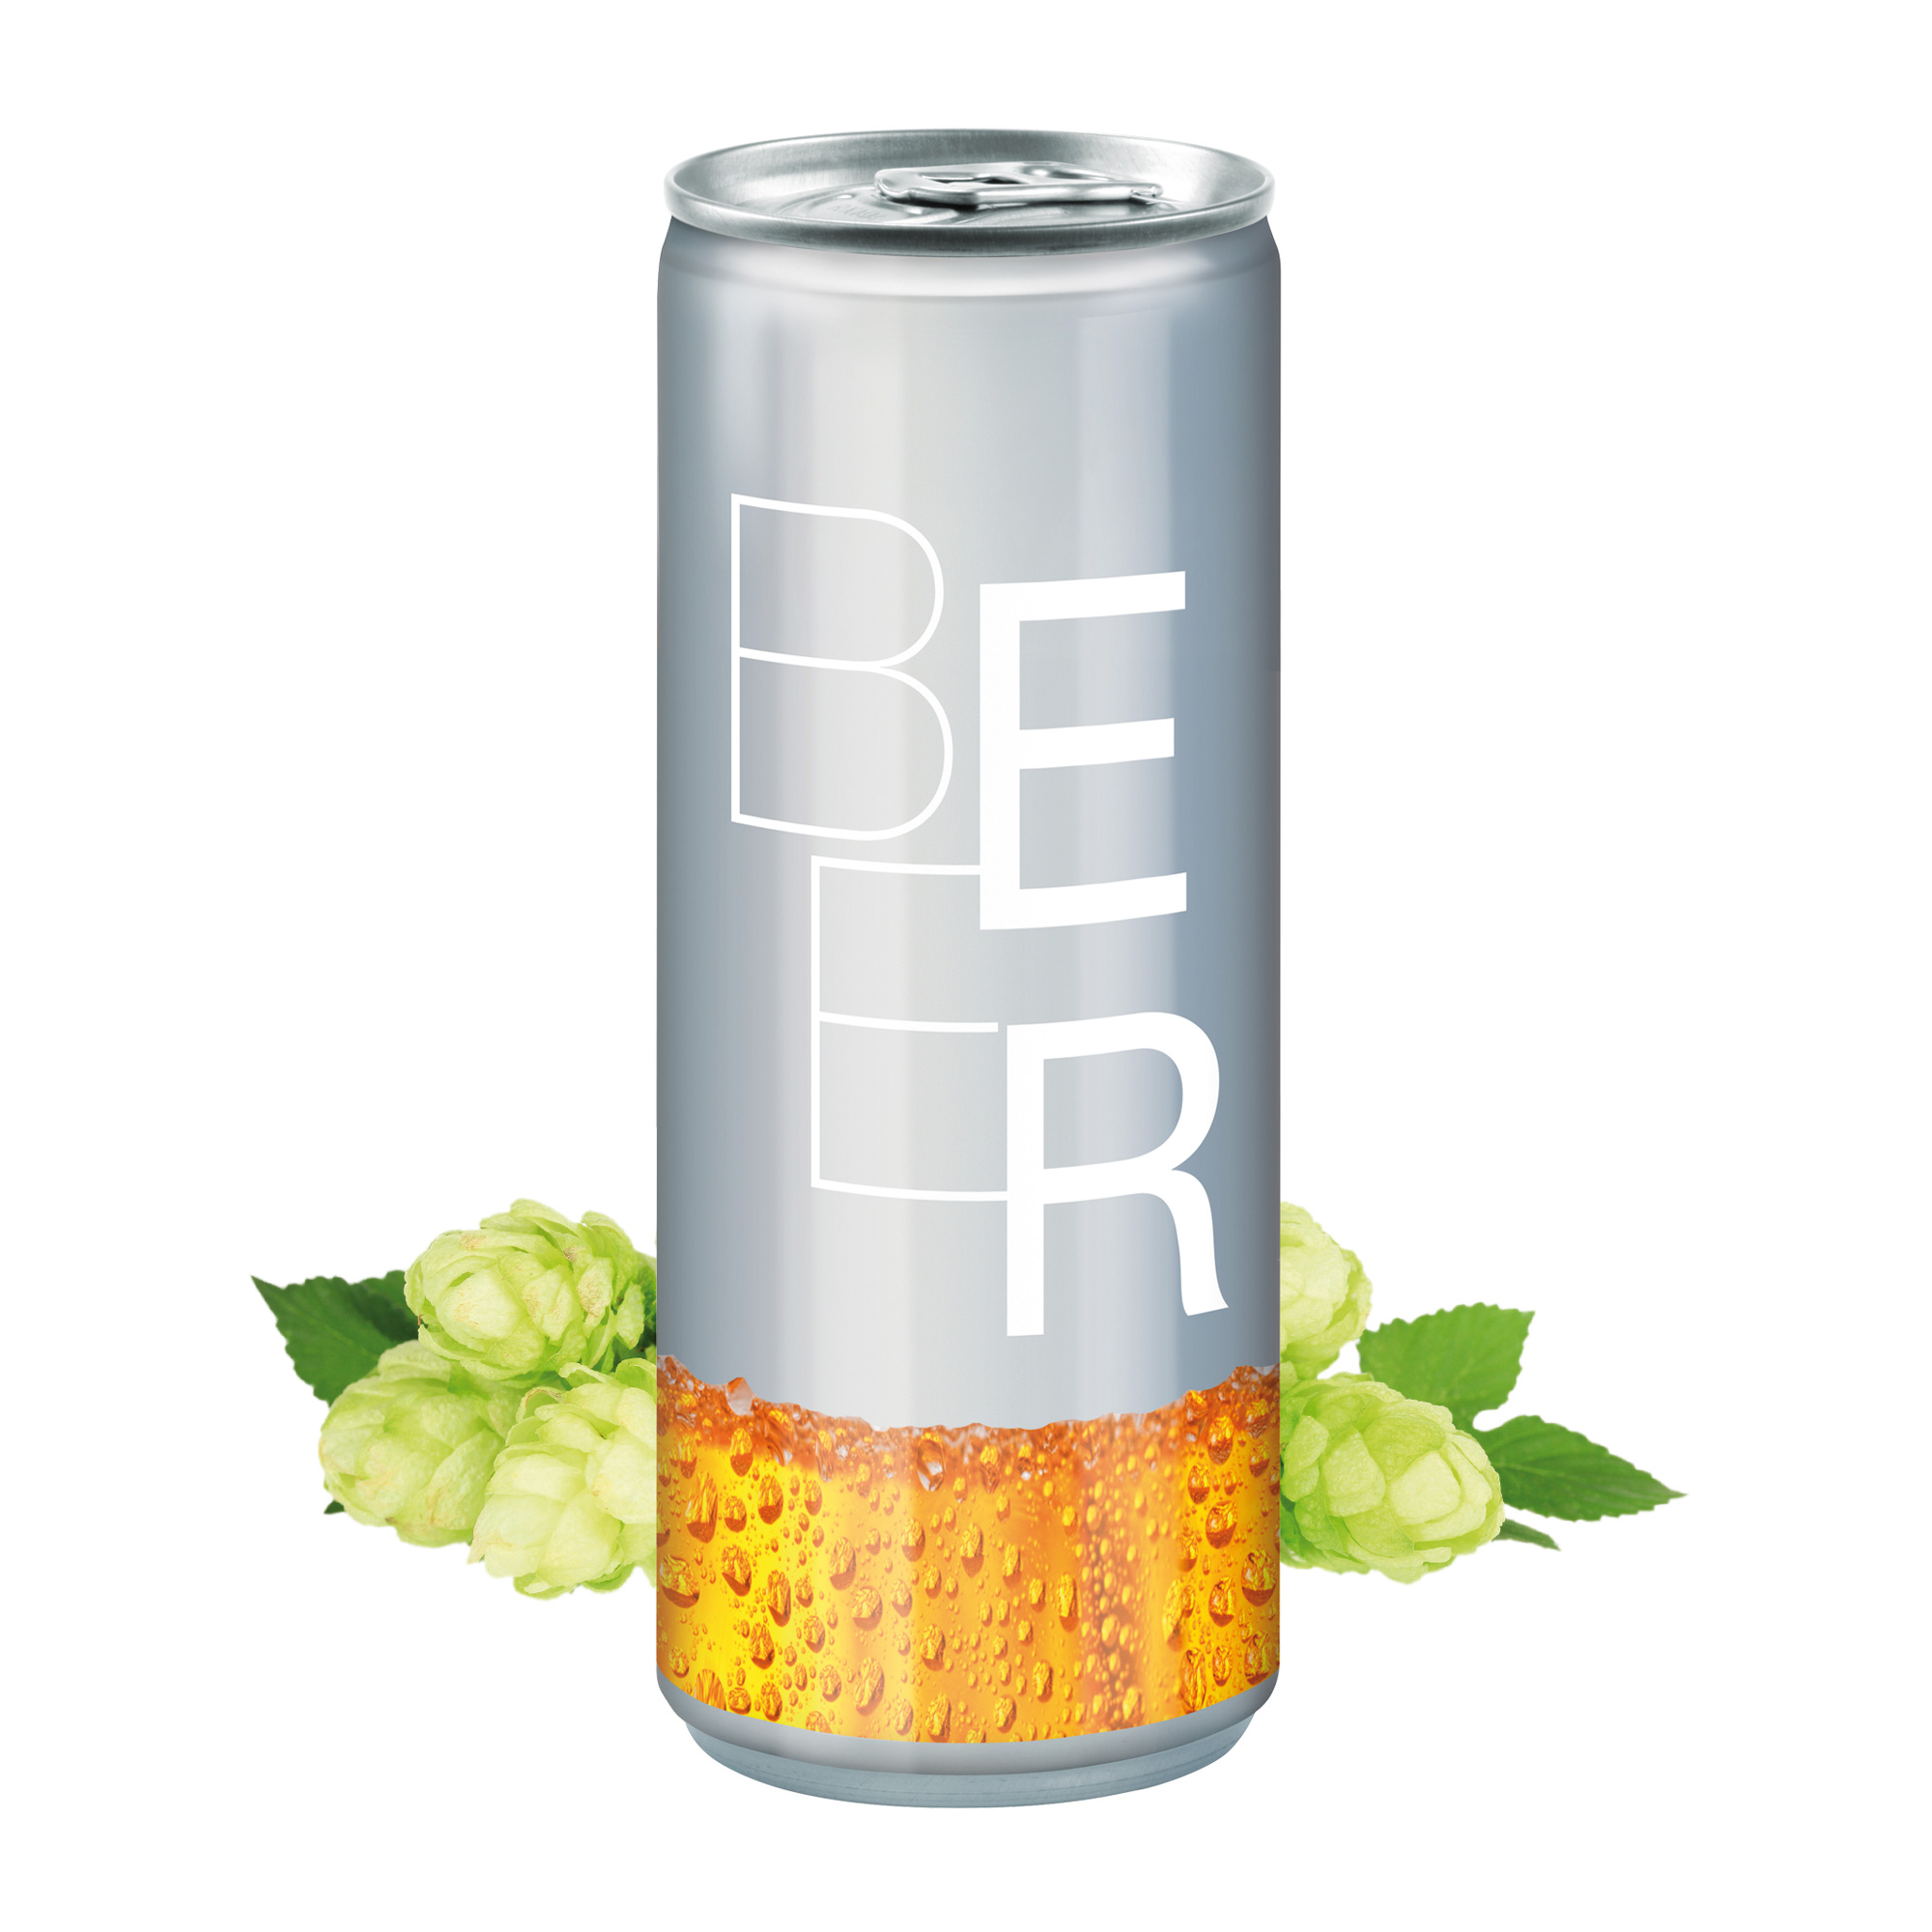 250 ml Bier - No Label Look (Exportware pfandfrei)